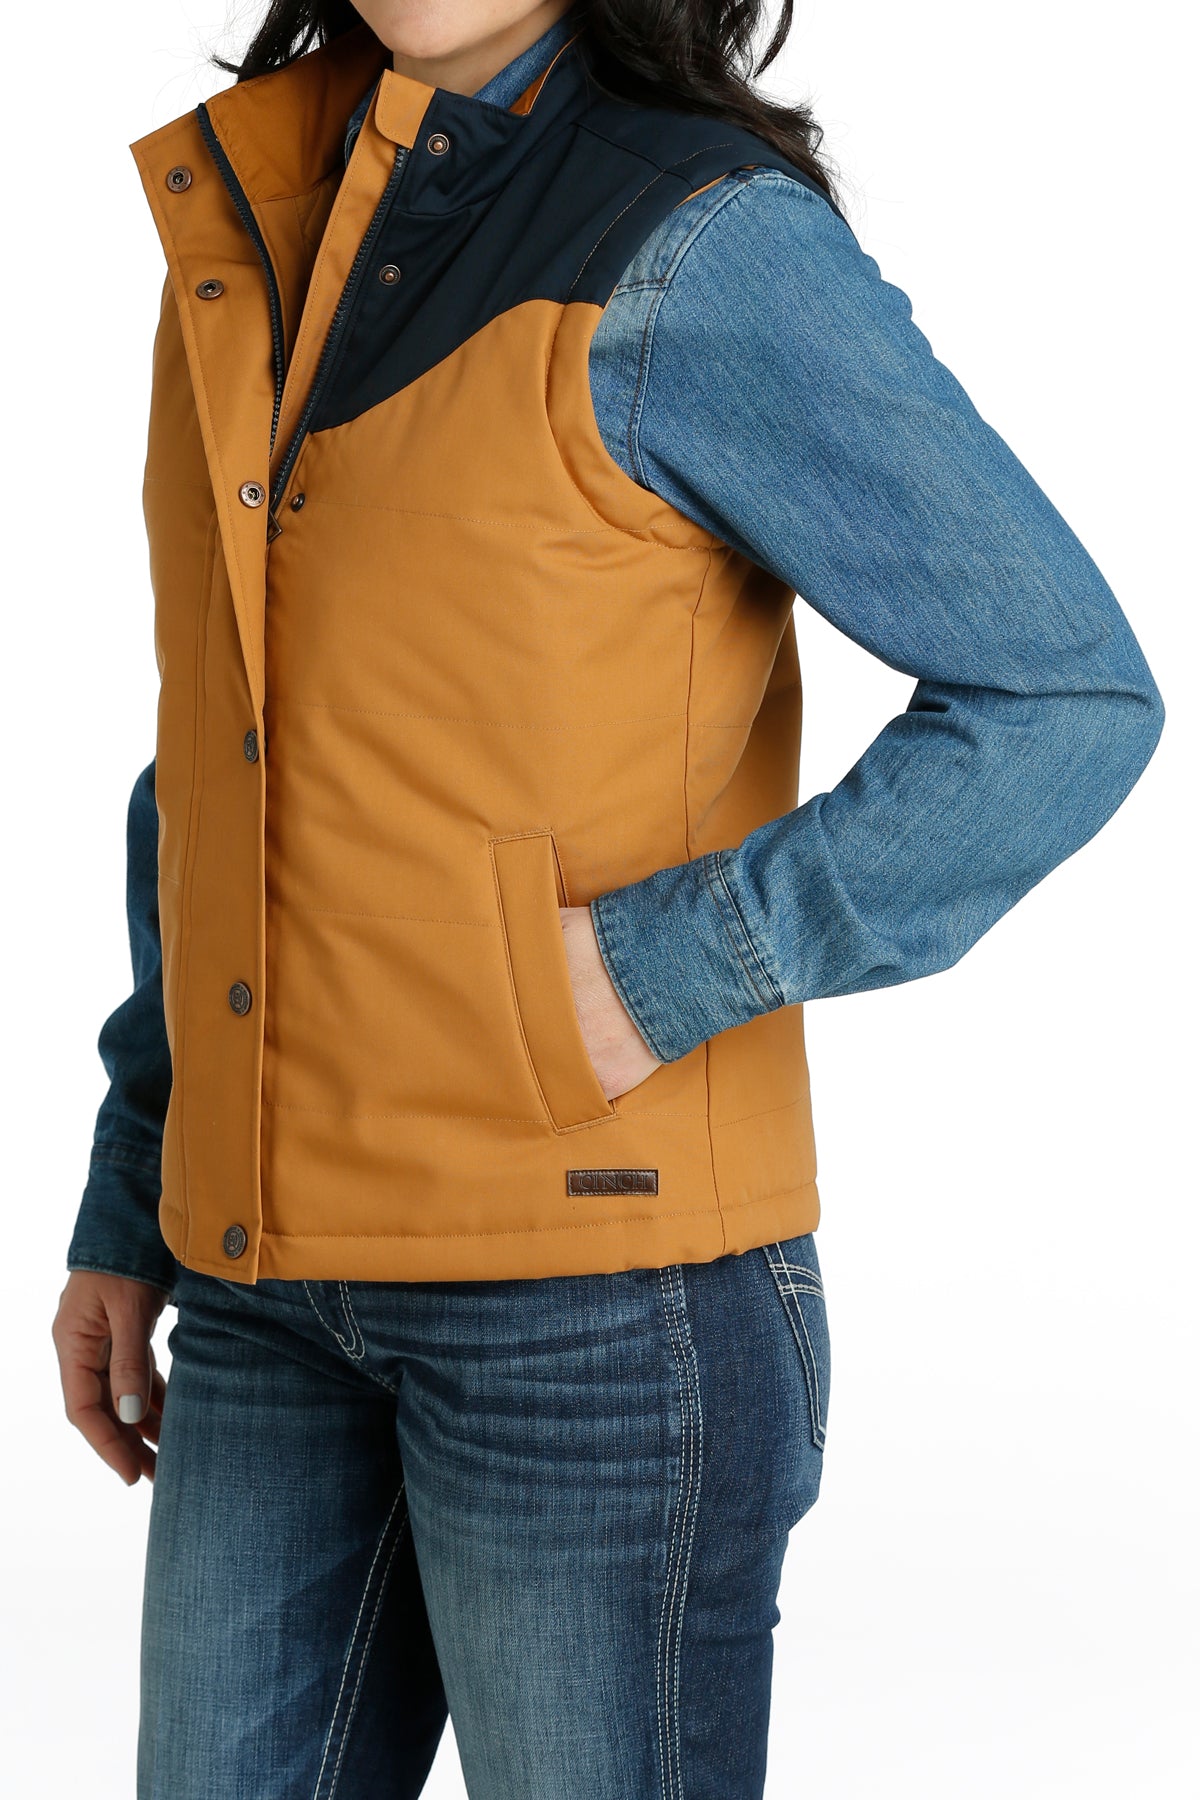 Women's Cinch Conceal Carry Vest in Brown